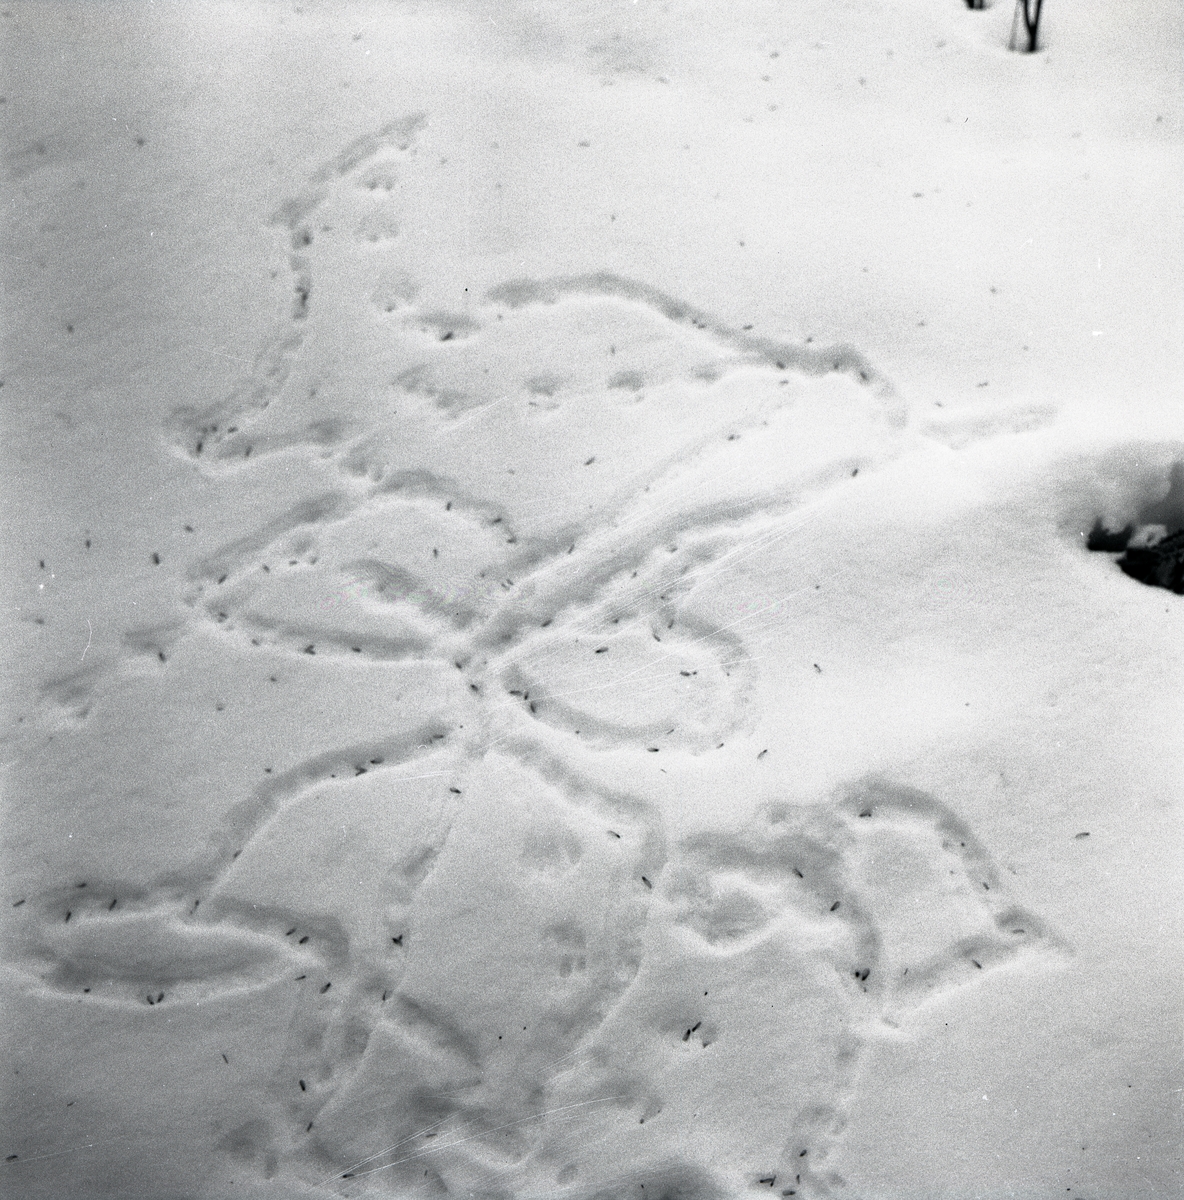 Zigzagformade musspår i snön, 1955.